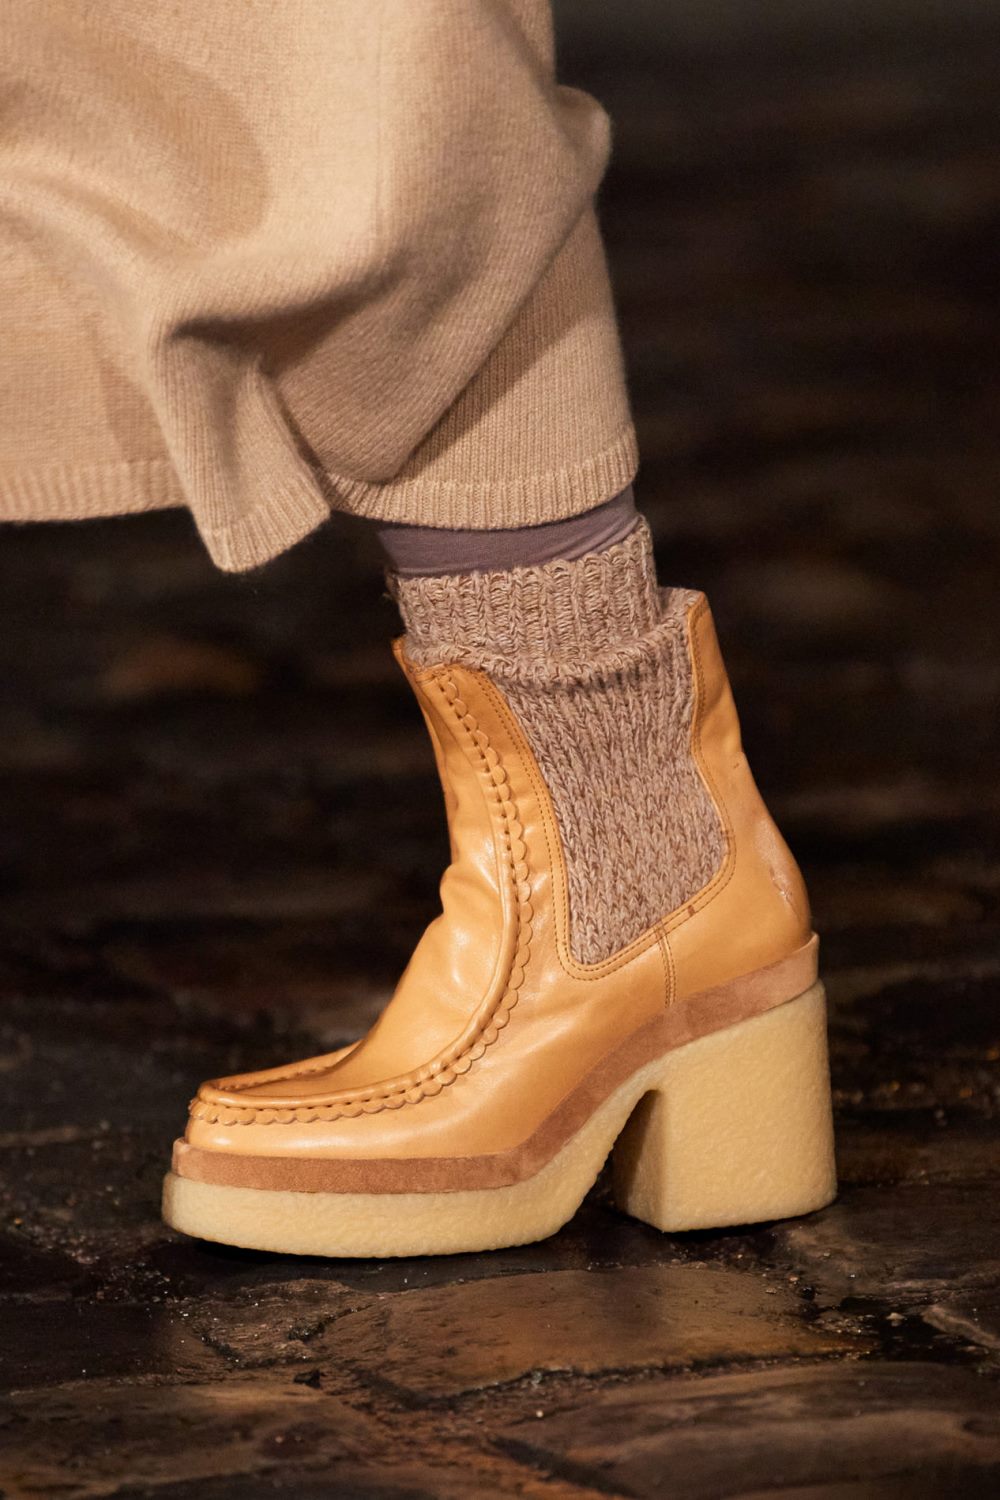 Модные тренды в женской обуви осень-зима 2021-2022 - челси на каблуке. Образ из коллекции Chloé.